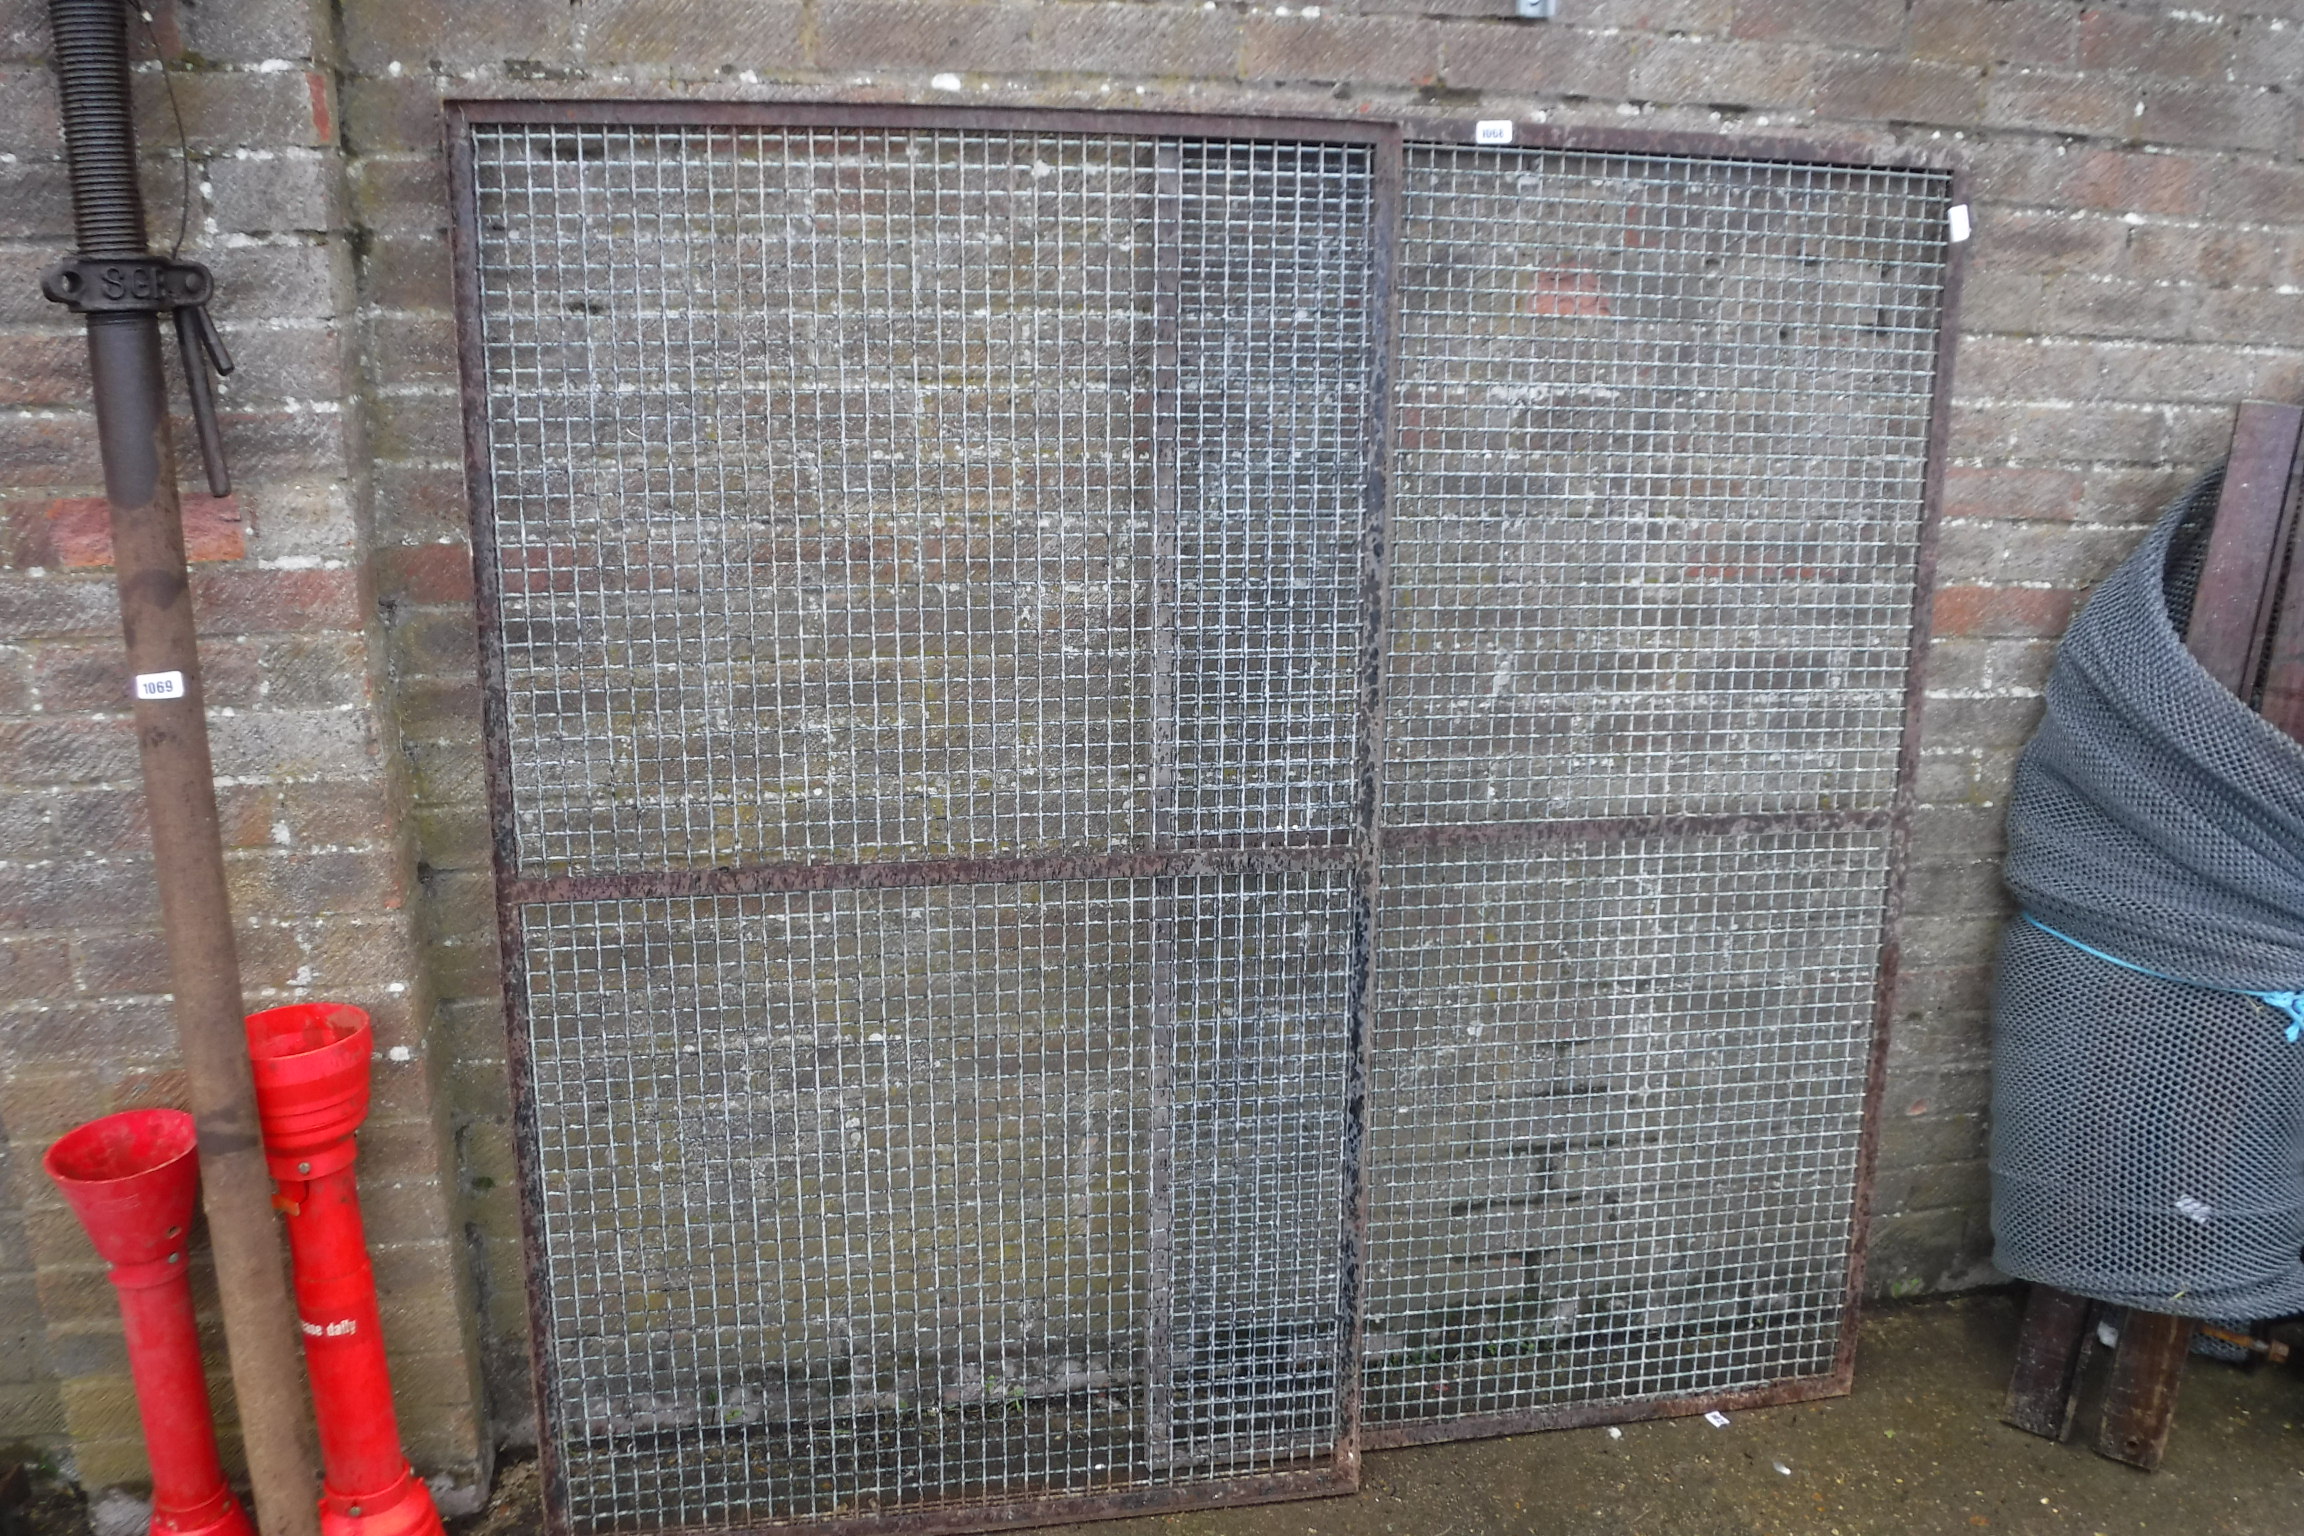 Pair of metal cage doors